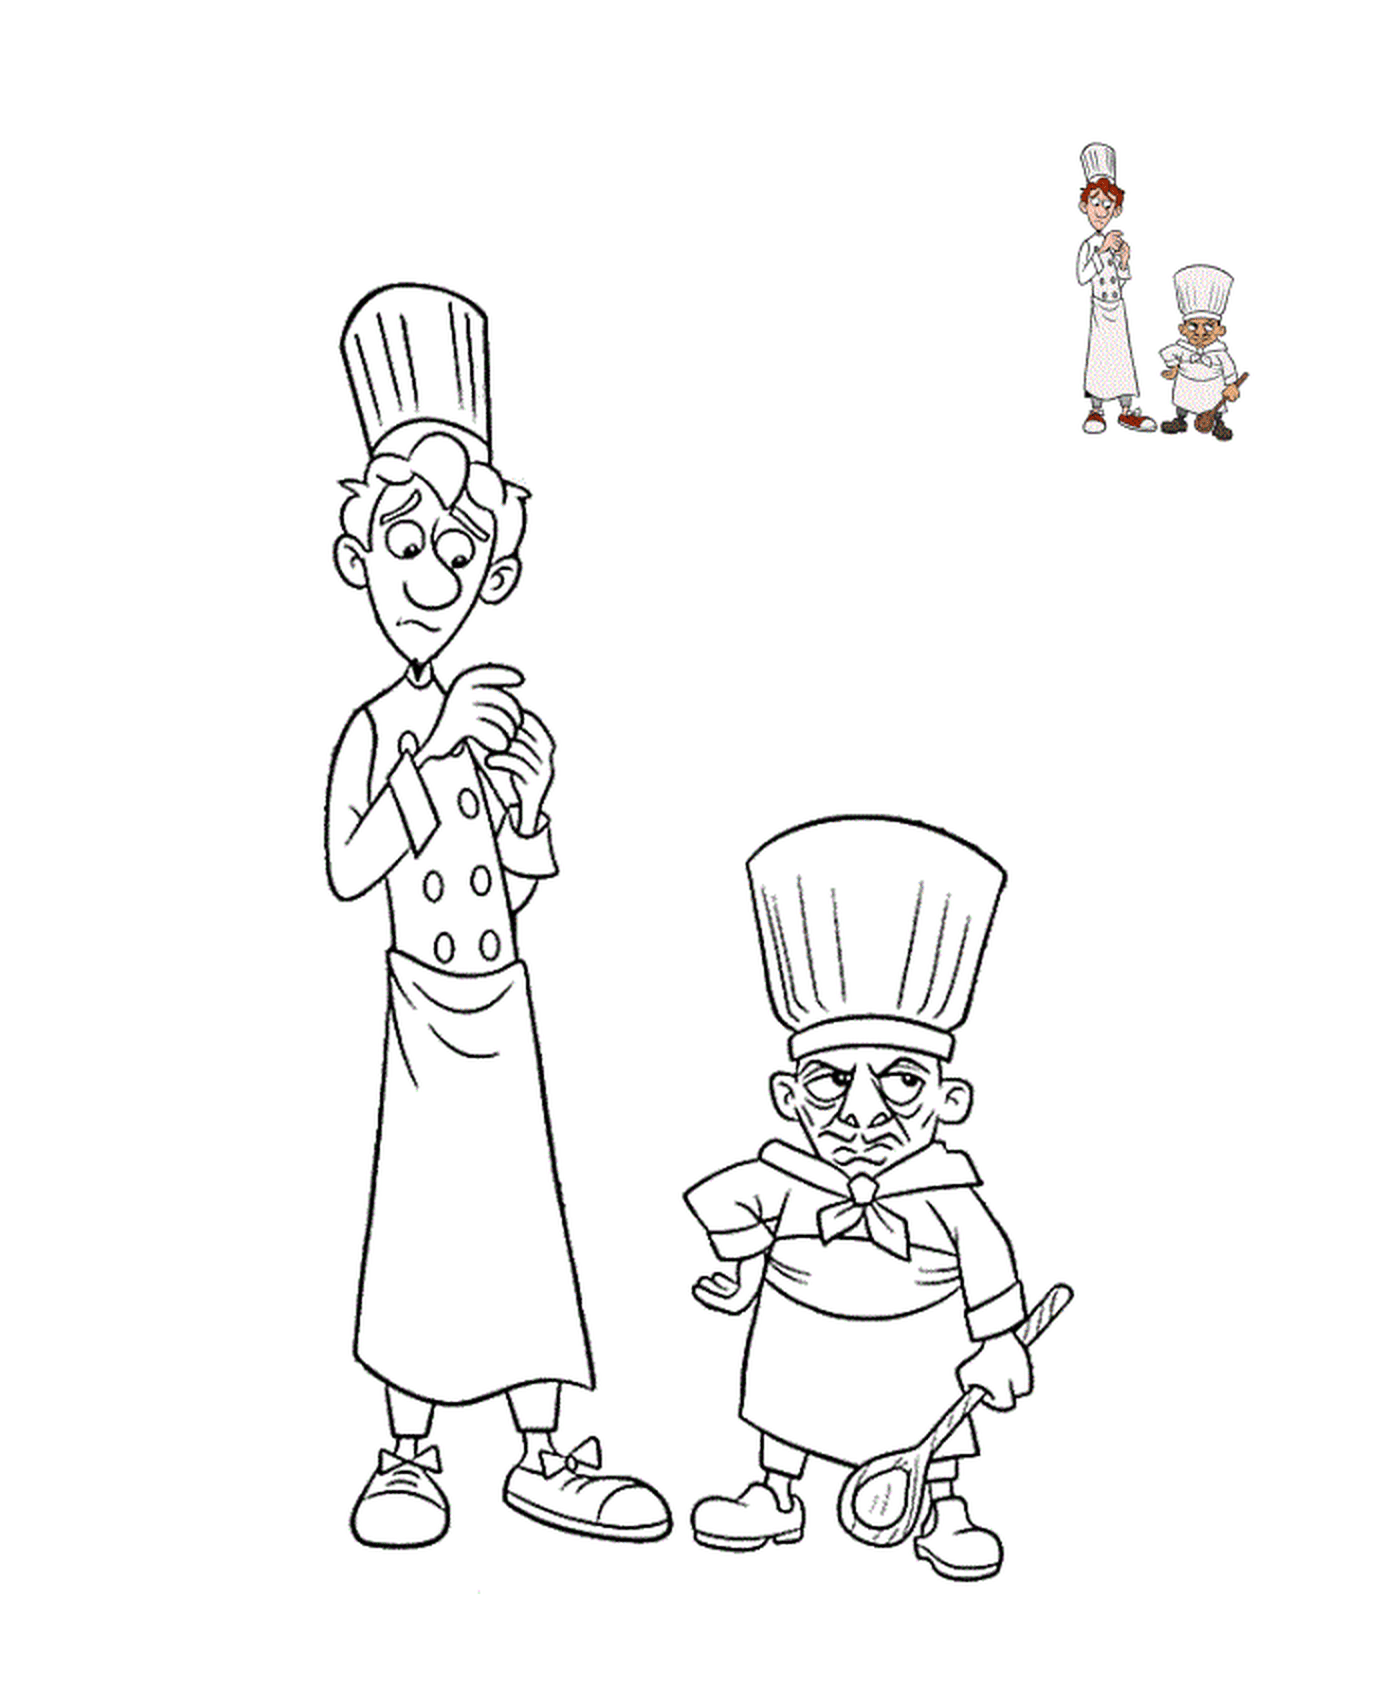  Skinner e Alfredo, cucina accattivante 